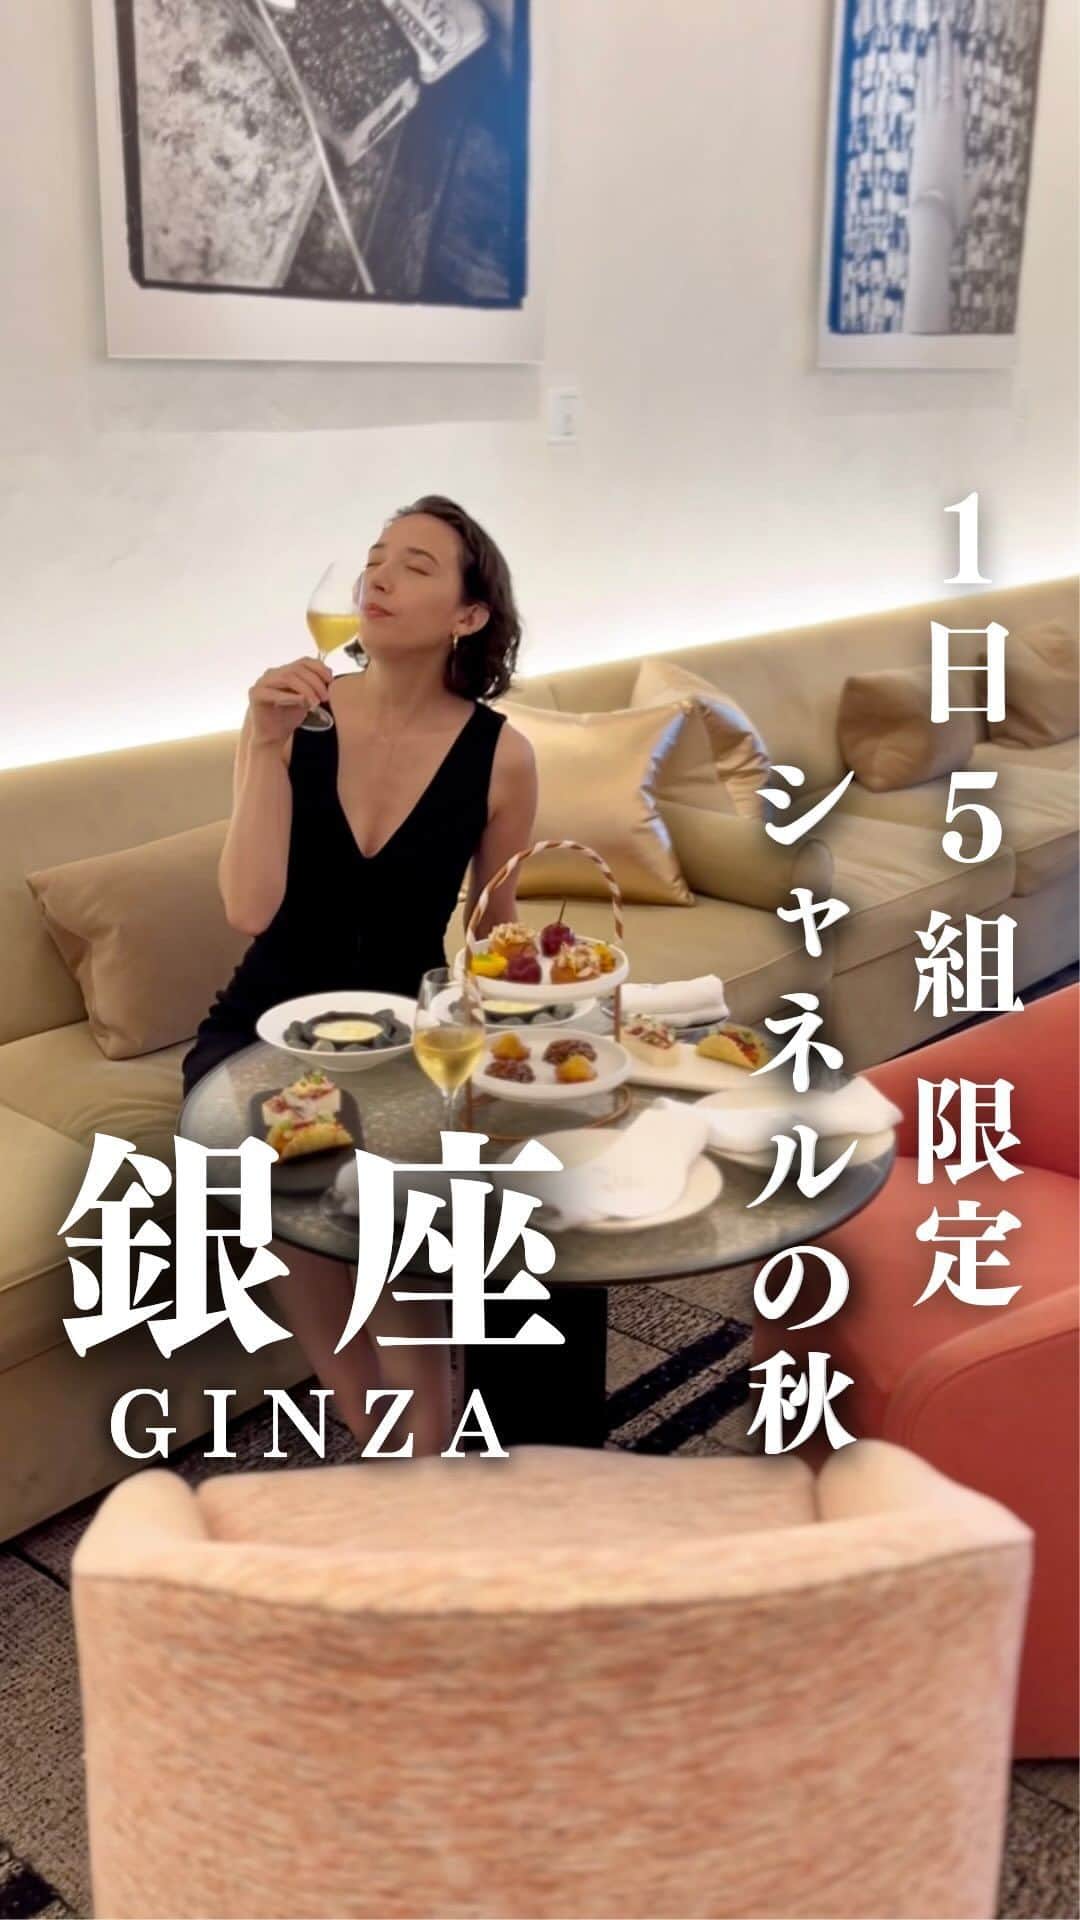 斉藤アリスのインスタグラム：「BEIGE ALAIN DUCASSE TOKYO @ GINZA @beige_restaurant   シャネル銀座ビル最上階にある ミシュラン2つ星フレンチレストラン 「ベージュ アラン・デュカス 東京」  2023年9月1日から、 『パティシエの手仕事』をテーマにした アフタヌーンティーをスタート🥂  カメリアモチーフのデザート 「カレ・シャネル」など、 7種のスイーツがいただけます。  一つ一つ手作りで とても手間がかかるので 要予約、1日5組限定です。 10組じゃなかった🤣  超繊細＆フレッシュ✨ これは出来立てだからこそ できるものだと思います。 ぐんを抜いて美味しかった。  #BEIGEALAINDUCASSETOKYO #ベージュアランデュカス東京 #ginzarestaurant #tokyo2023  #tokyorestaurant #tokyogourmet  #chanel #chaneltokyo #ALAINDUCASSE #東京デート #東京レストラン #afternoontea #アフタヌーンティー #michelin #ミシュラン #japan2023 #銀座 #japan_vacations #japan_focus #tokyoguide #visitjapan #ginza #japanesegirl #japantrip #japanguide #tokyotrip #tokyotravel」